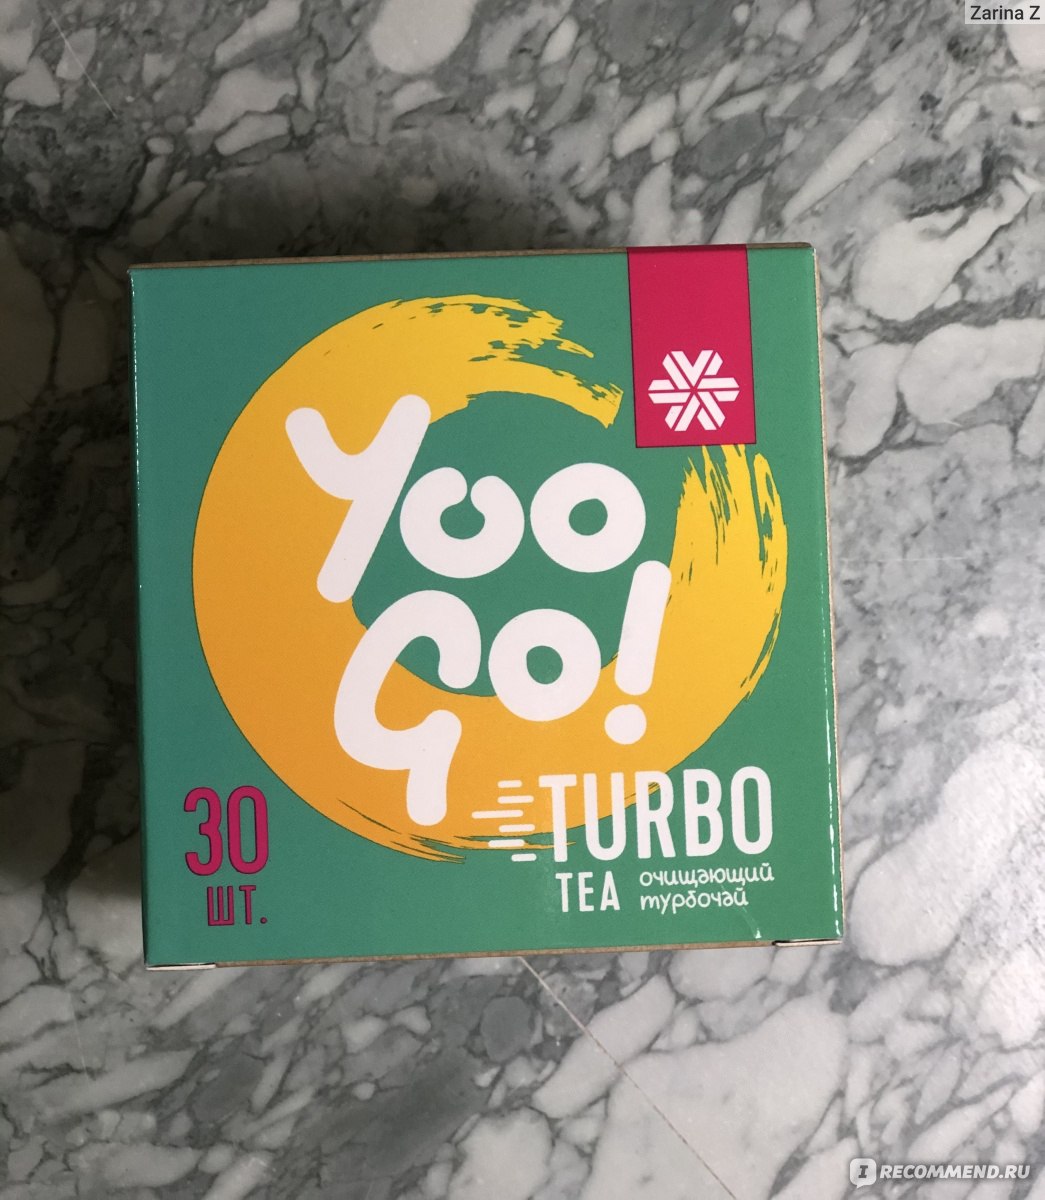 Травяной чай Siberian Wellness (Сибирское здоровье) Turbo Tea (Очищающий турбочай) - Yoo Gо! фото